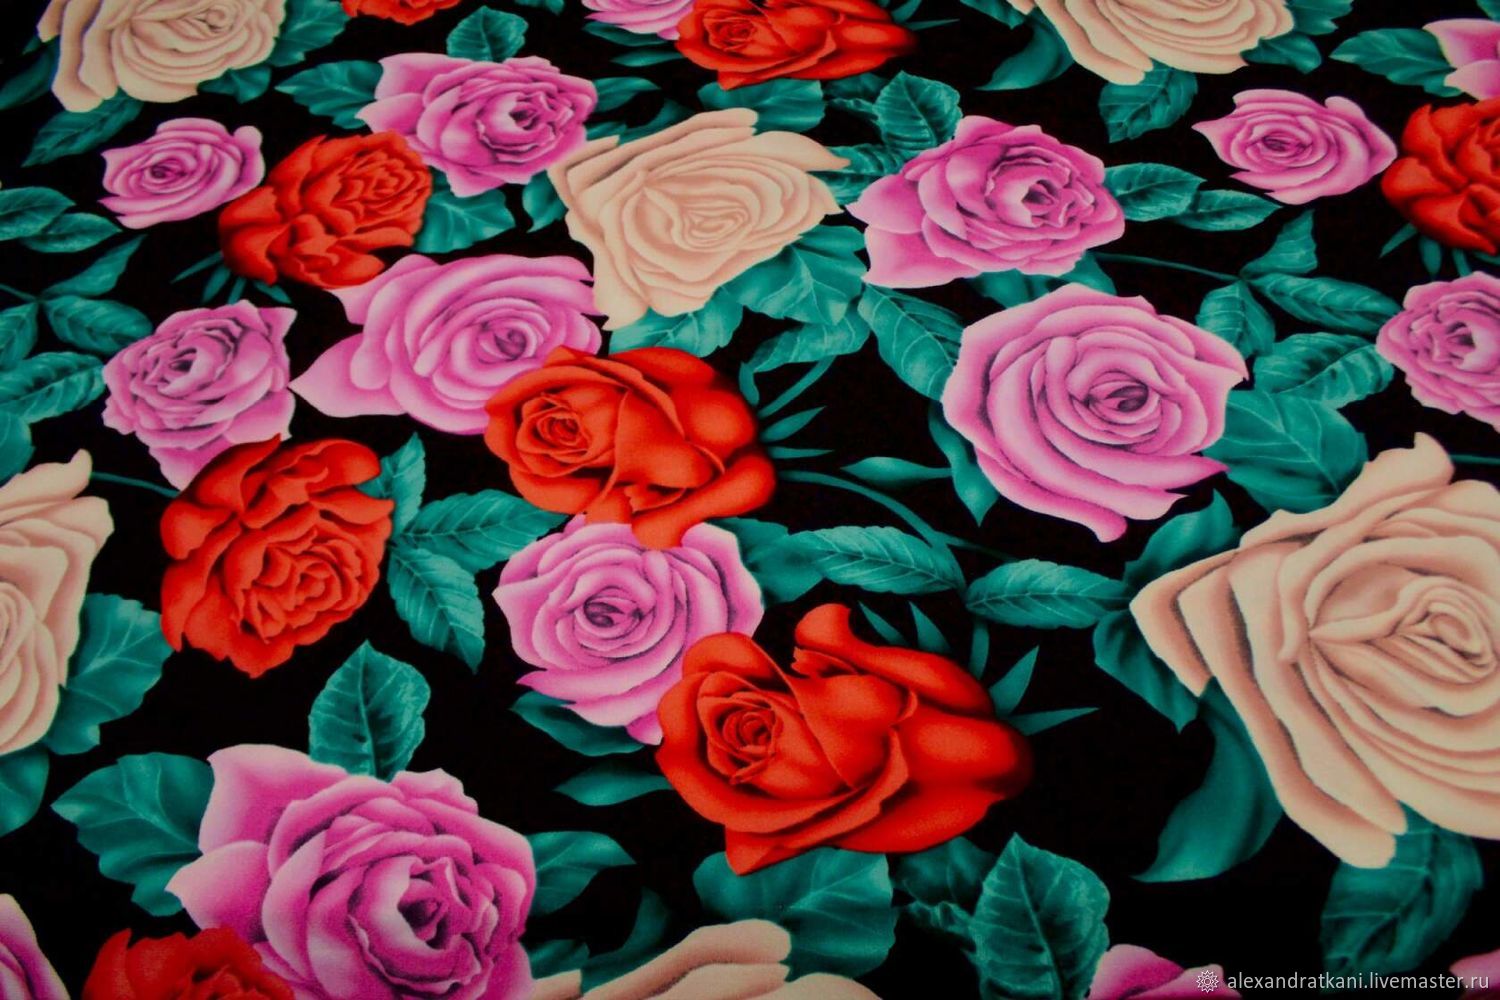 Купить материал розы. Ткань с розами. Ткань в розочку. Ткань розы 3д. Ткань с красными розами.